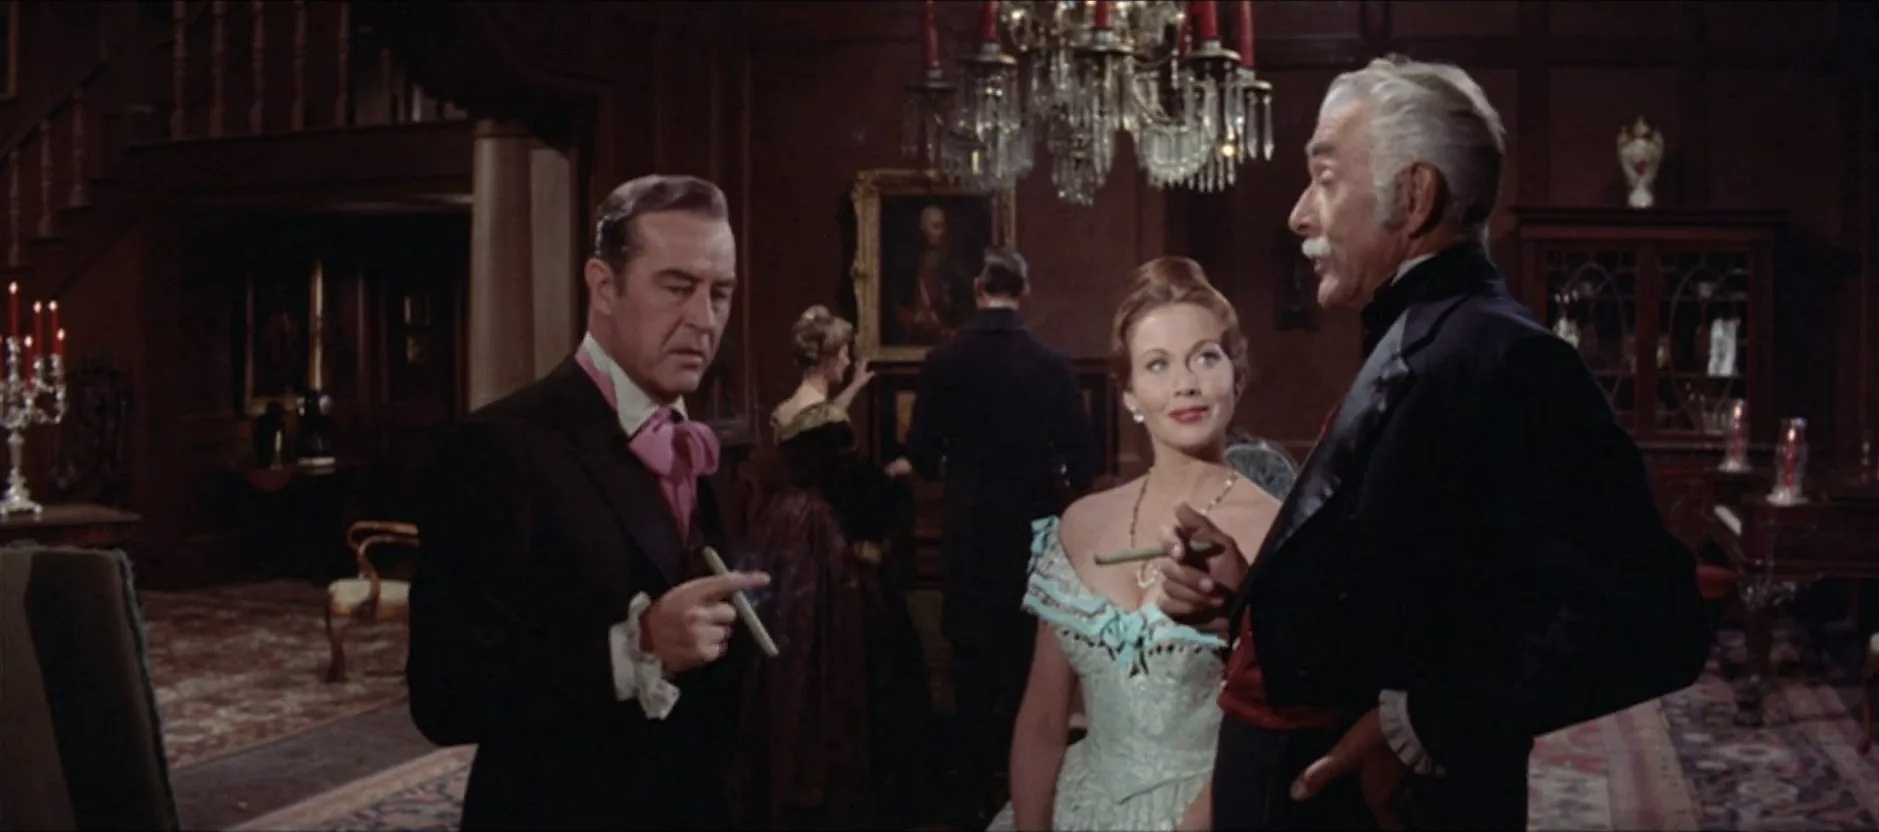 The Premature Burial (1962) Screenshot 5 